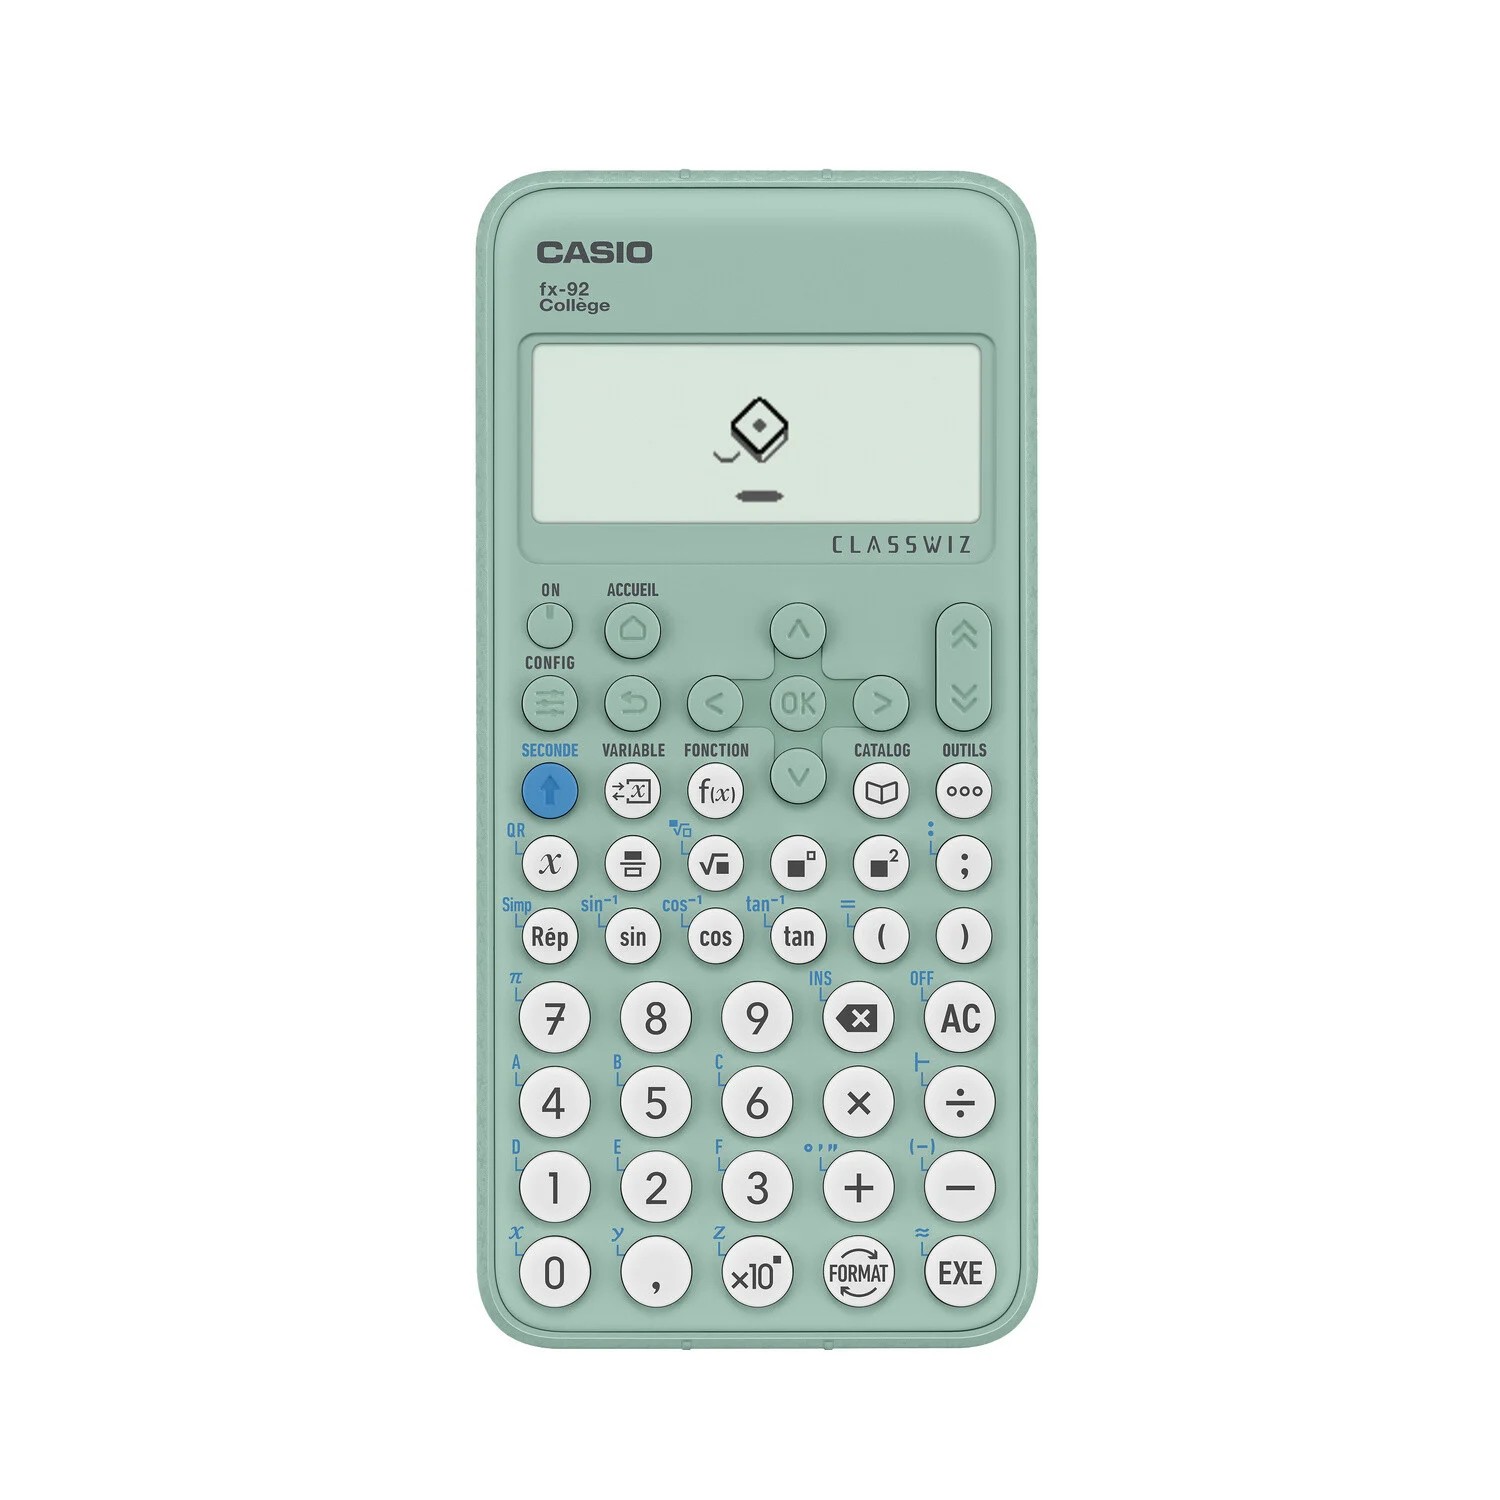 Émulateur fx-92B Spéciale Collège - Émulateur Calculatrice